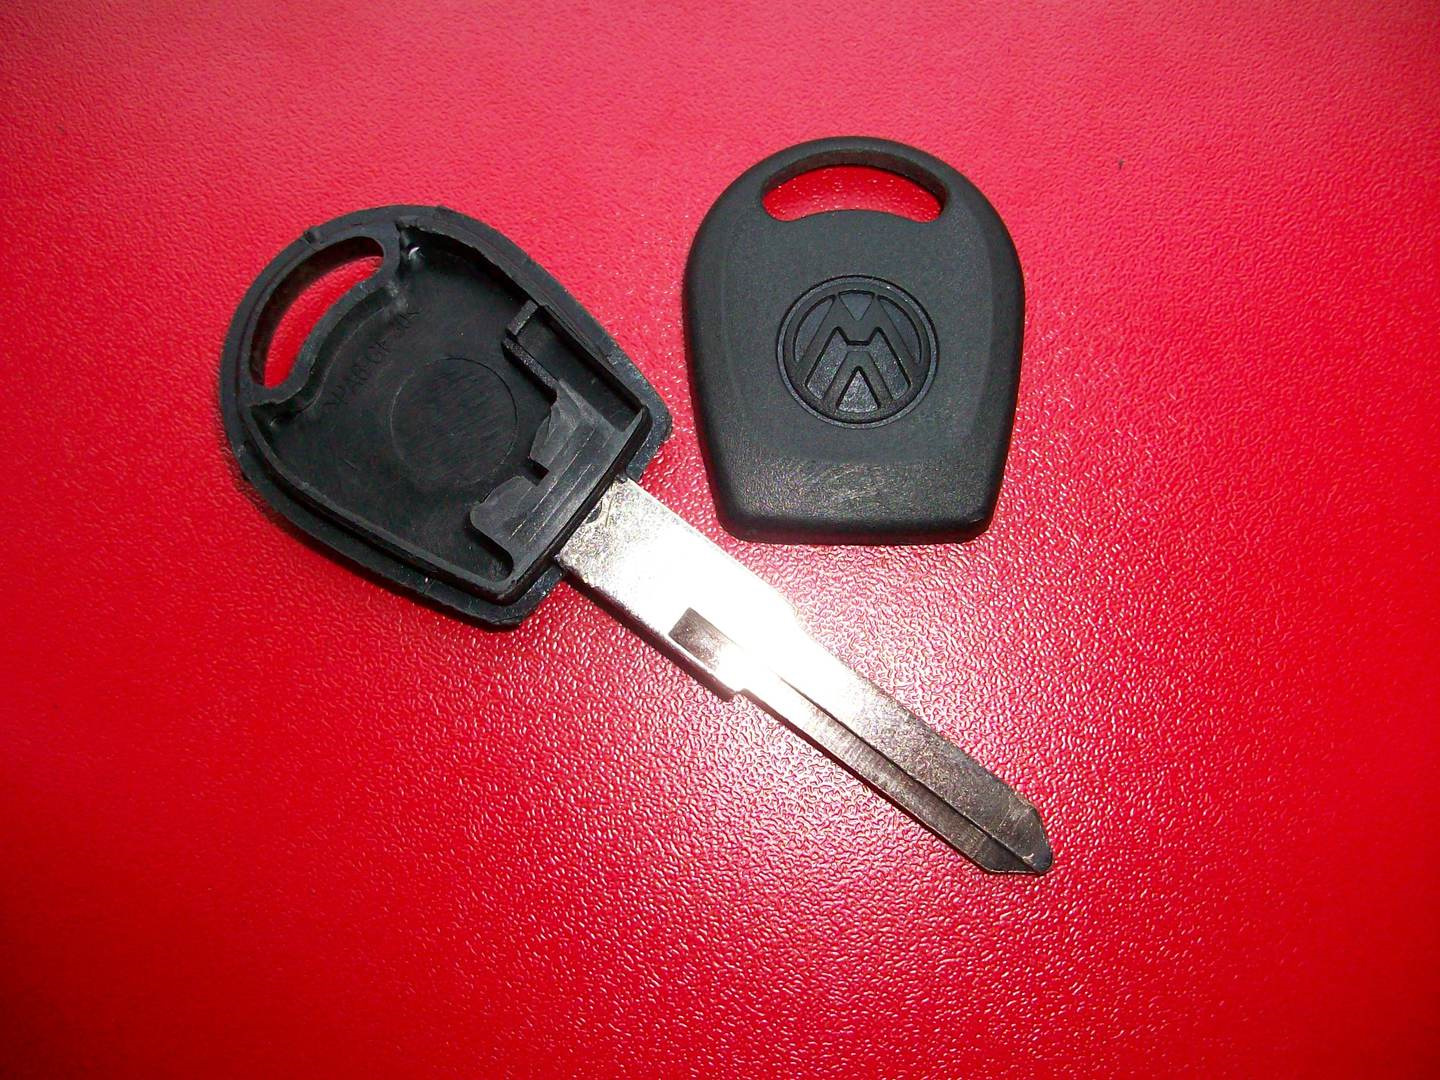 Чип иммобилайзера в ключе. Штатный ключ Фольксваген гольф 4. Фольксваген гольф 4 ключ зажигания. Иммобилайзер гольф 4 в Ключе зажигания. Чип ключа иммобилайзера Volkswagen Golf 4.